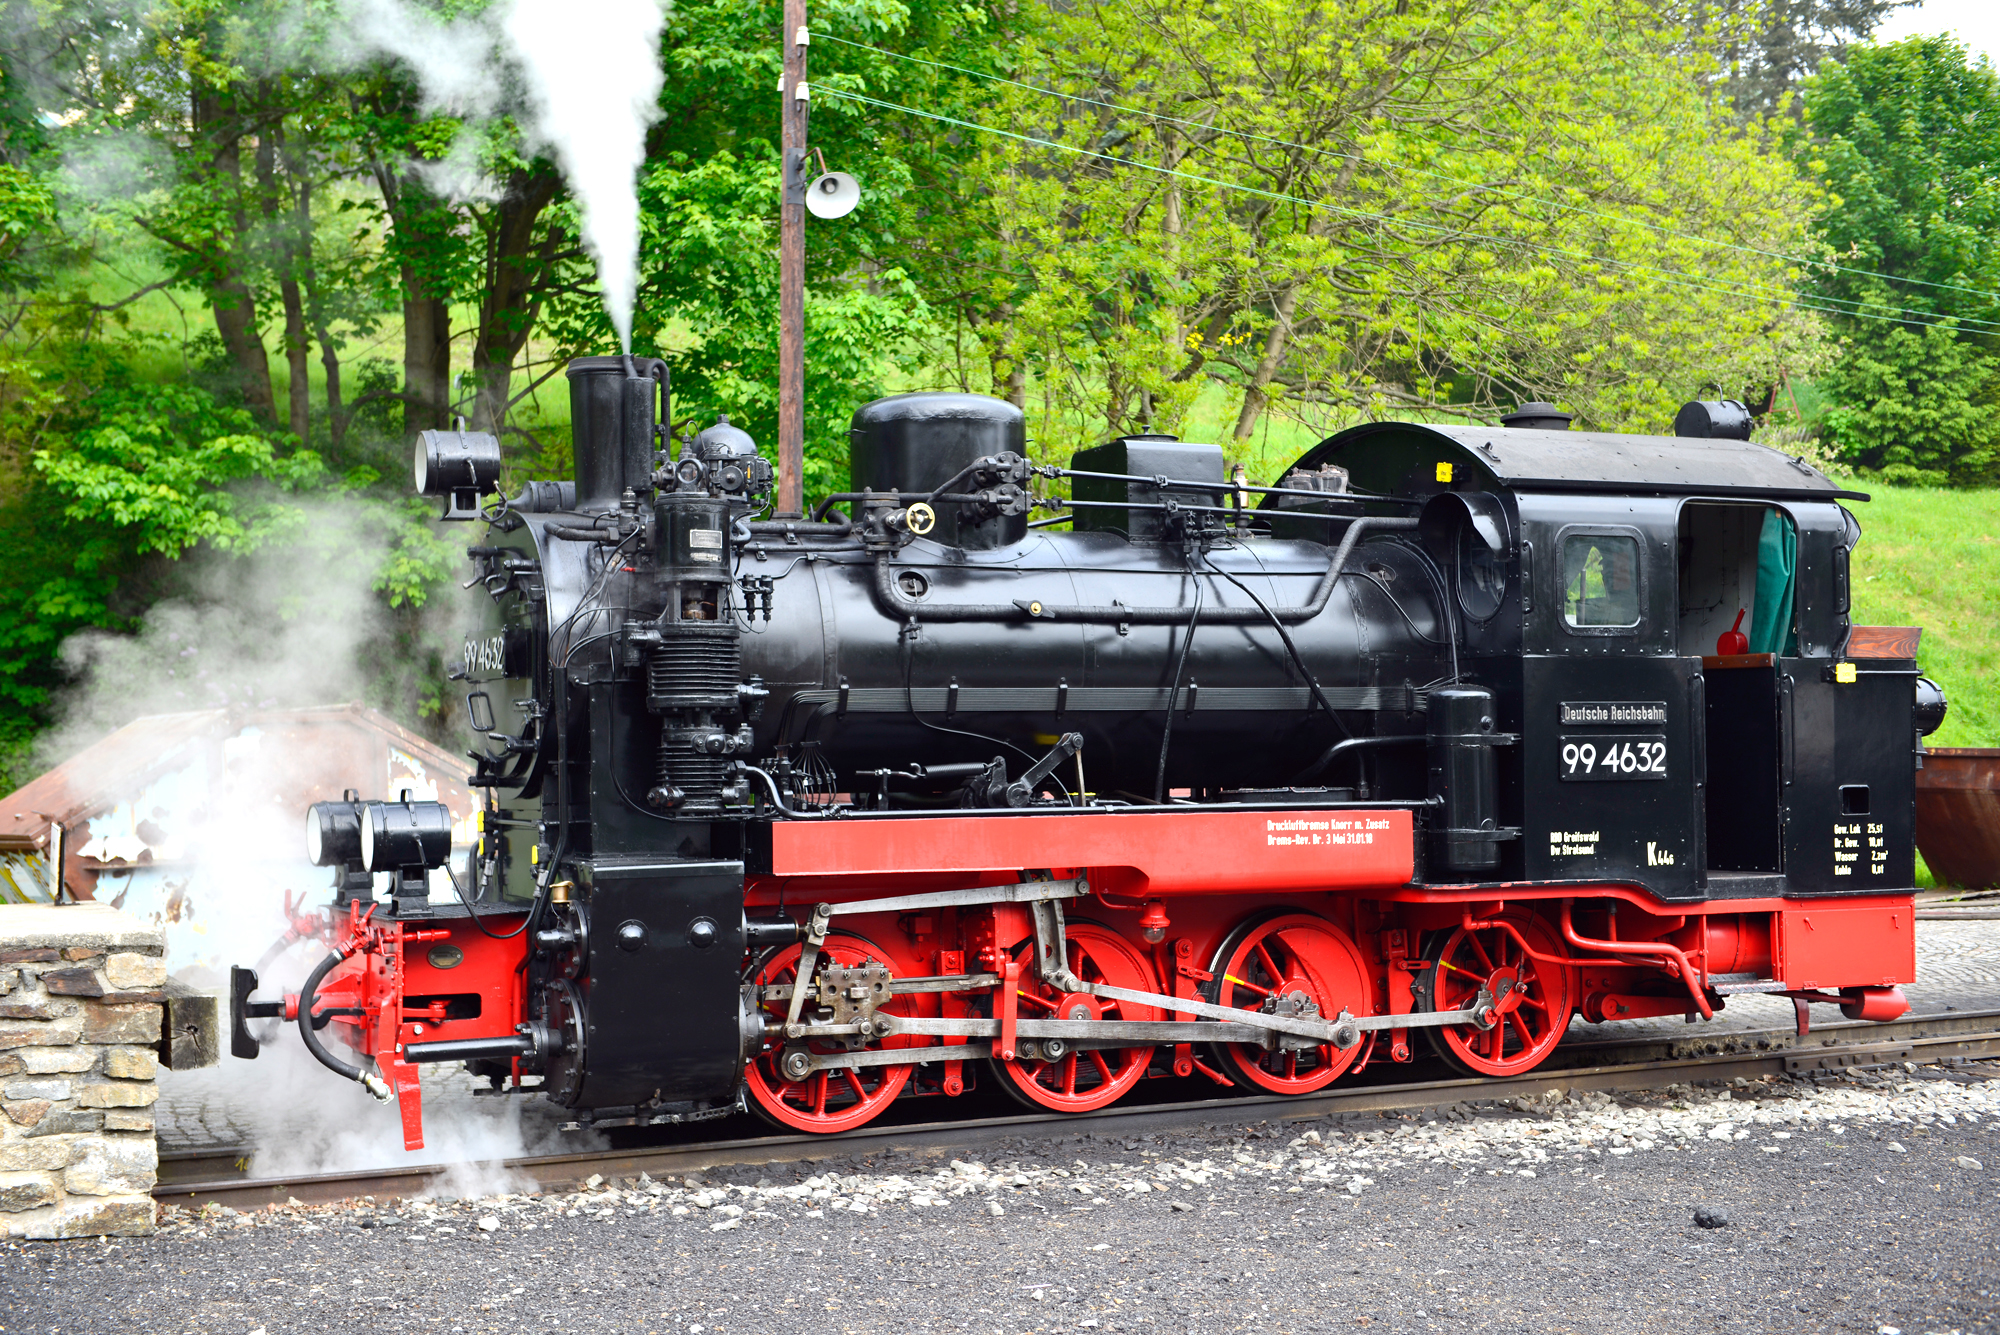 Am Montag, den 21. Mai 2018 sind von 09:00 Uhr bis 17:00 Uhr  die Zge auf der Prenitztalbahn von Jhstadt nach Steinbach und zurck unterwegs. Auf dem Bild ist die Rggensche Schmalspurlok 99 4632 beim Kohle- und Wasserfassen im Bahnhof Jhstadt vorgerfahren. 